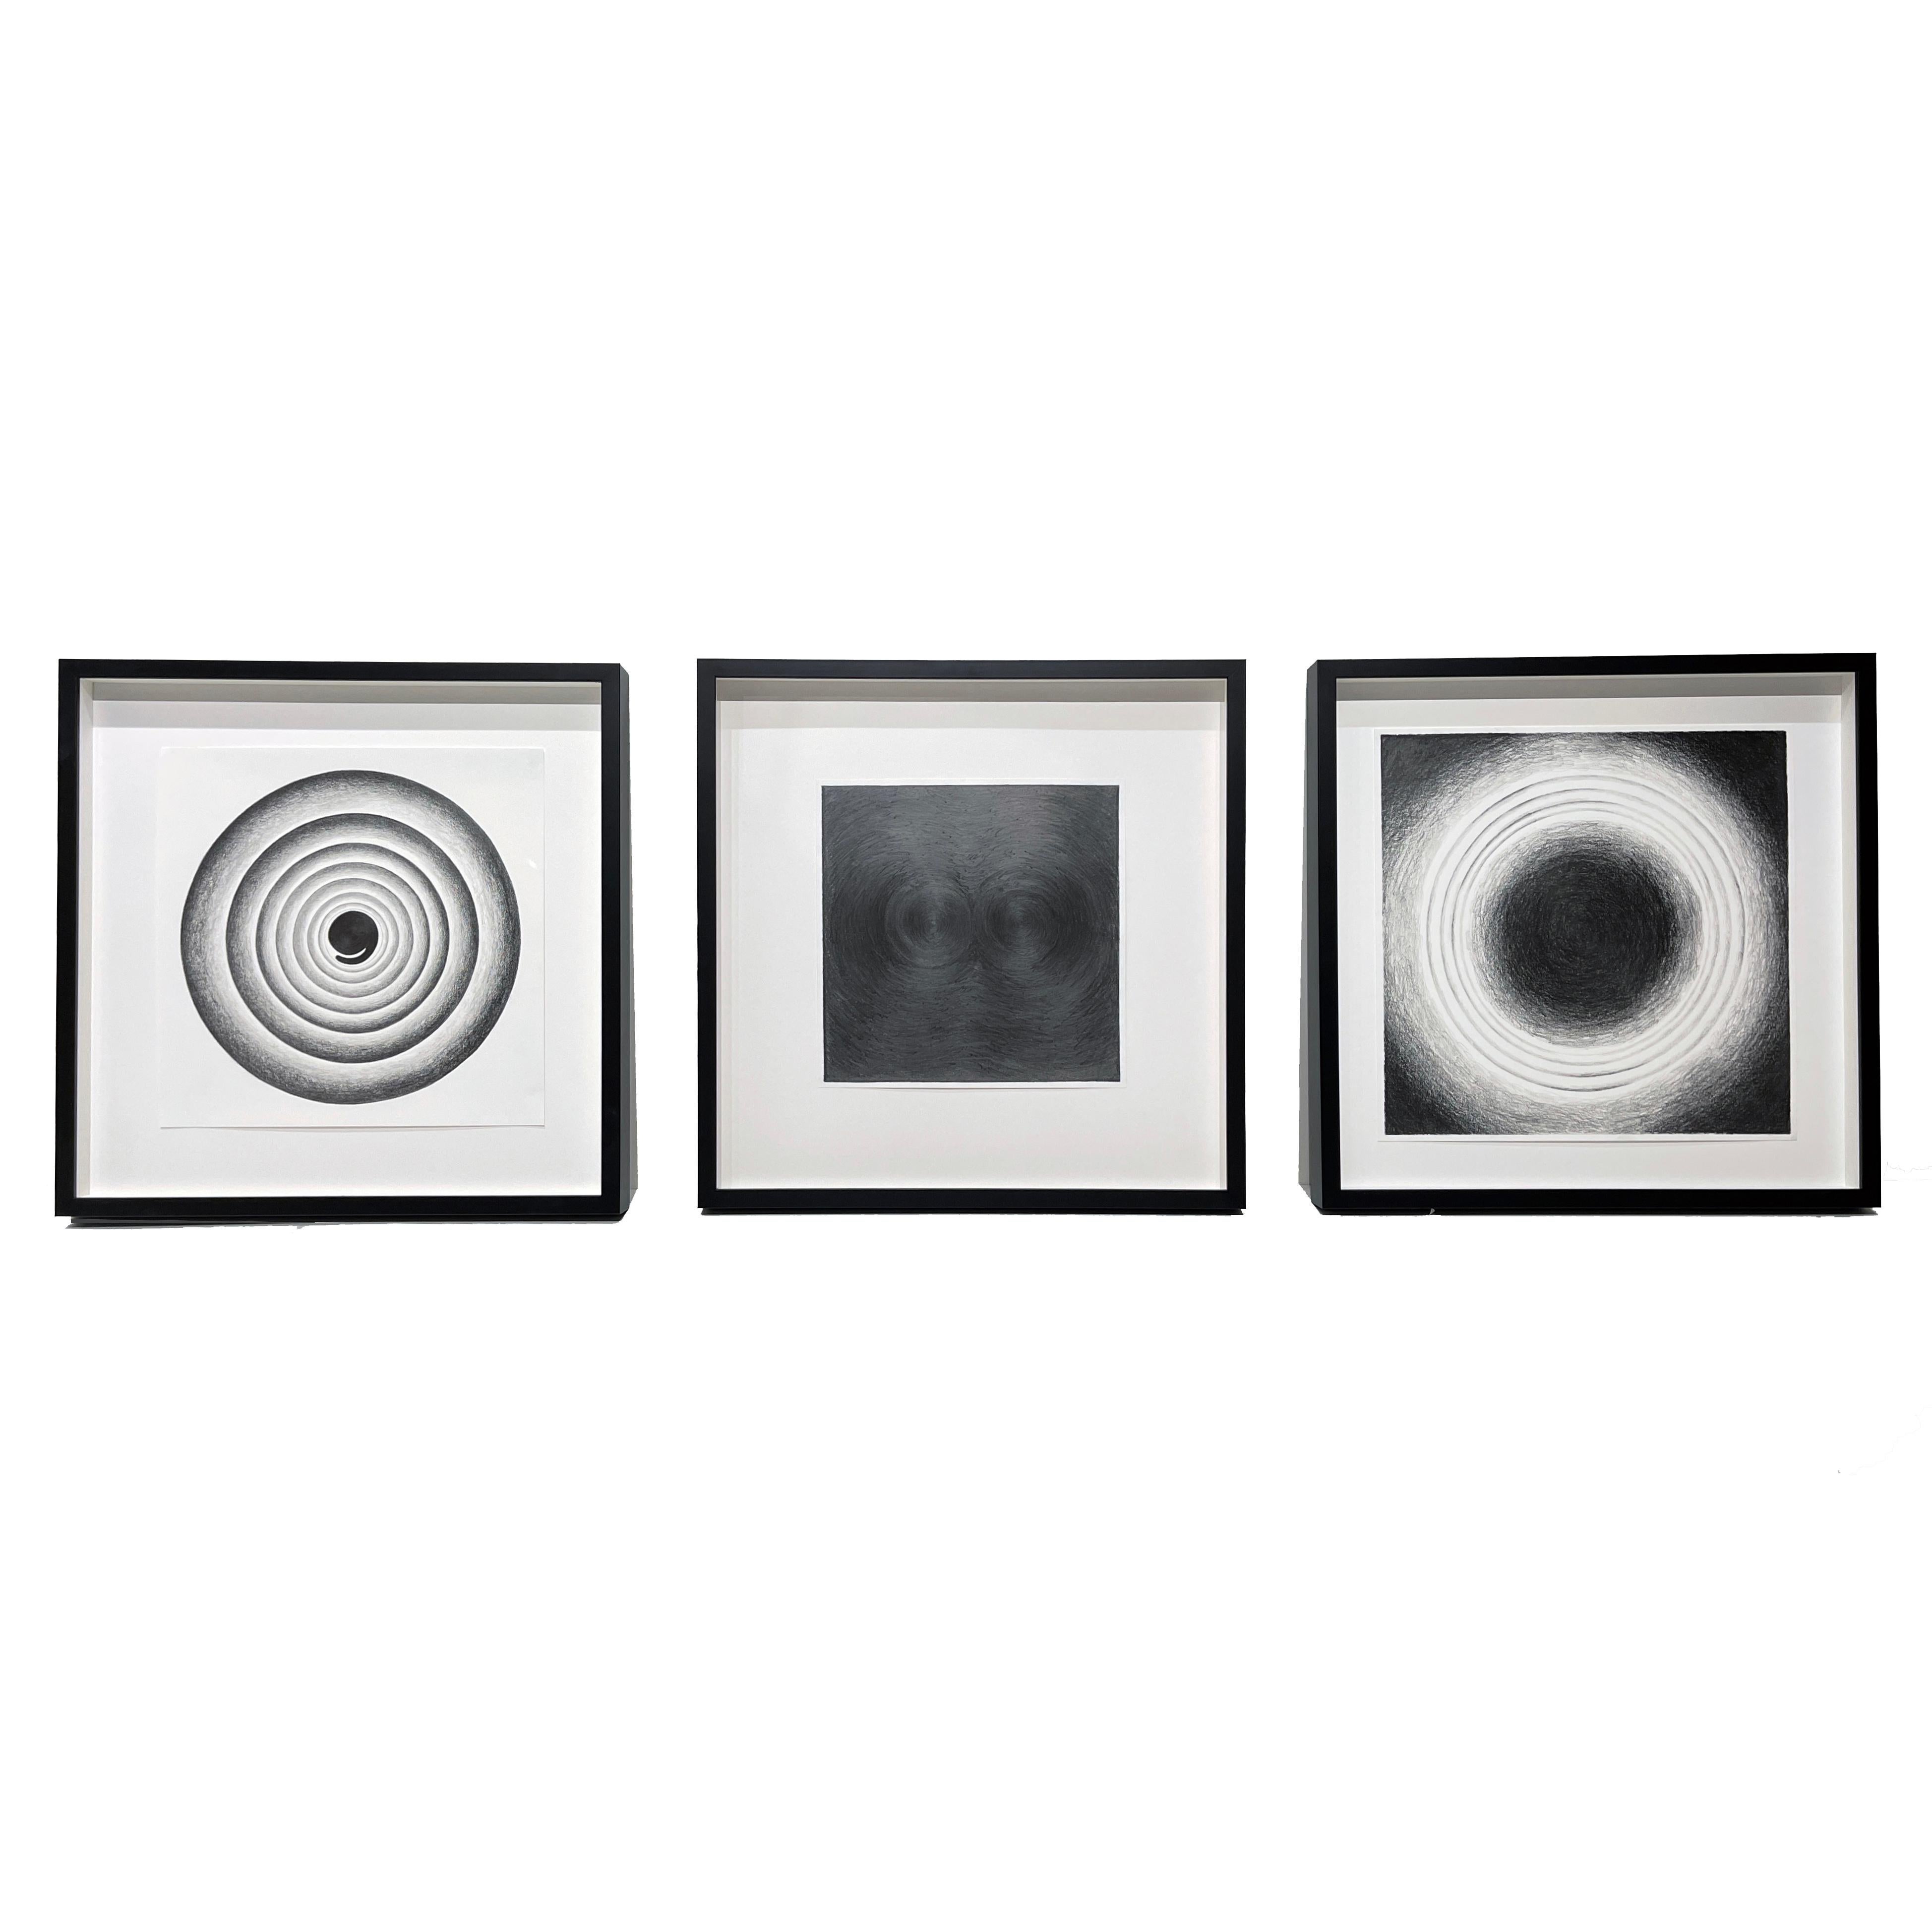 Abstract Drawing Joe Royer - Ensemble de trois abstractions circulaires géométriques , graphite sur papier, encadré